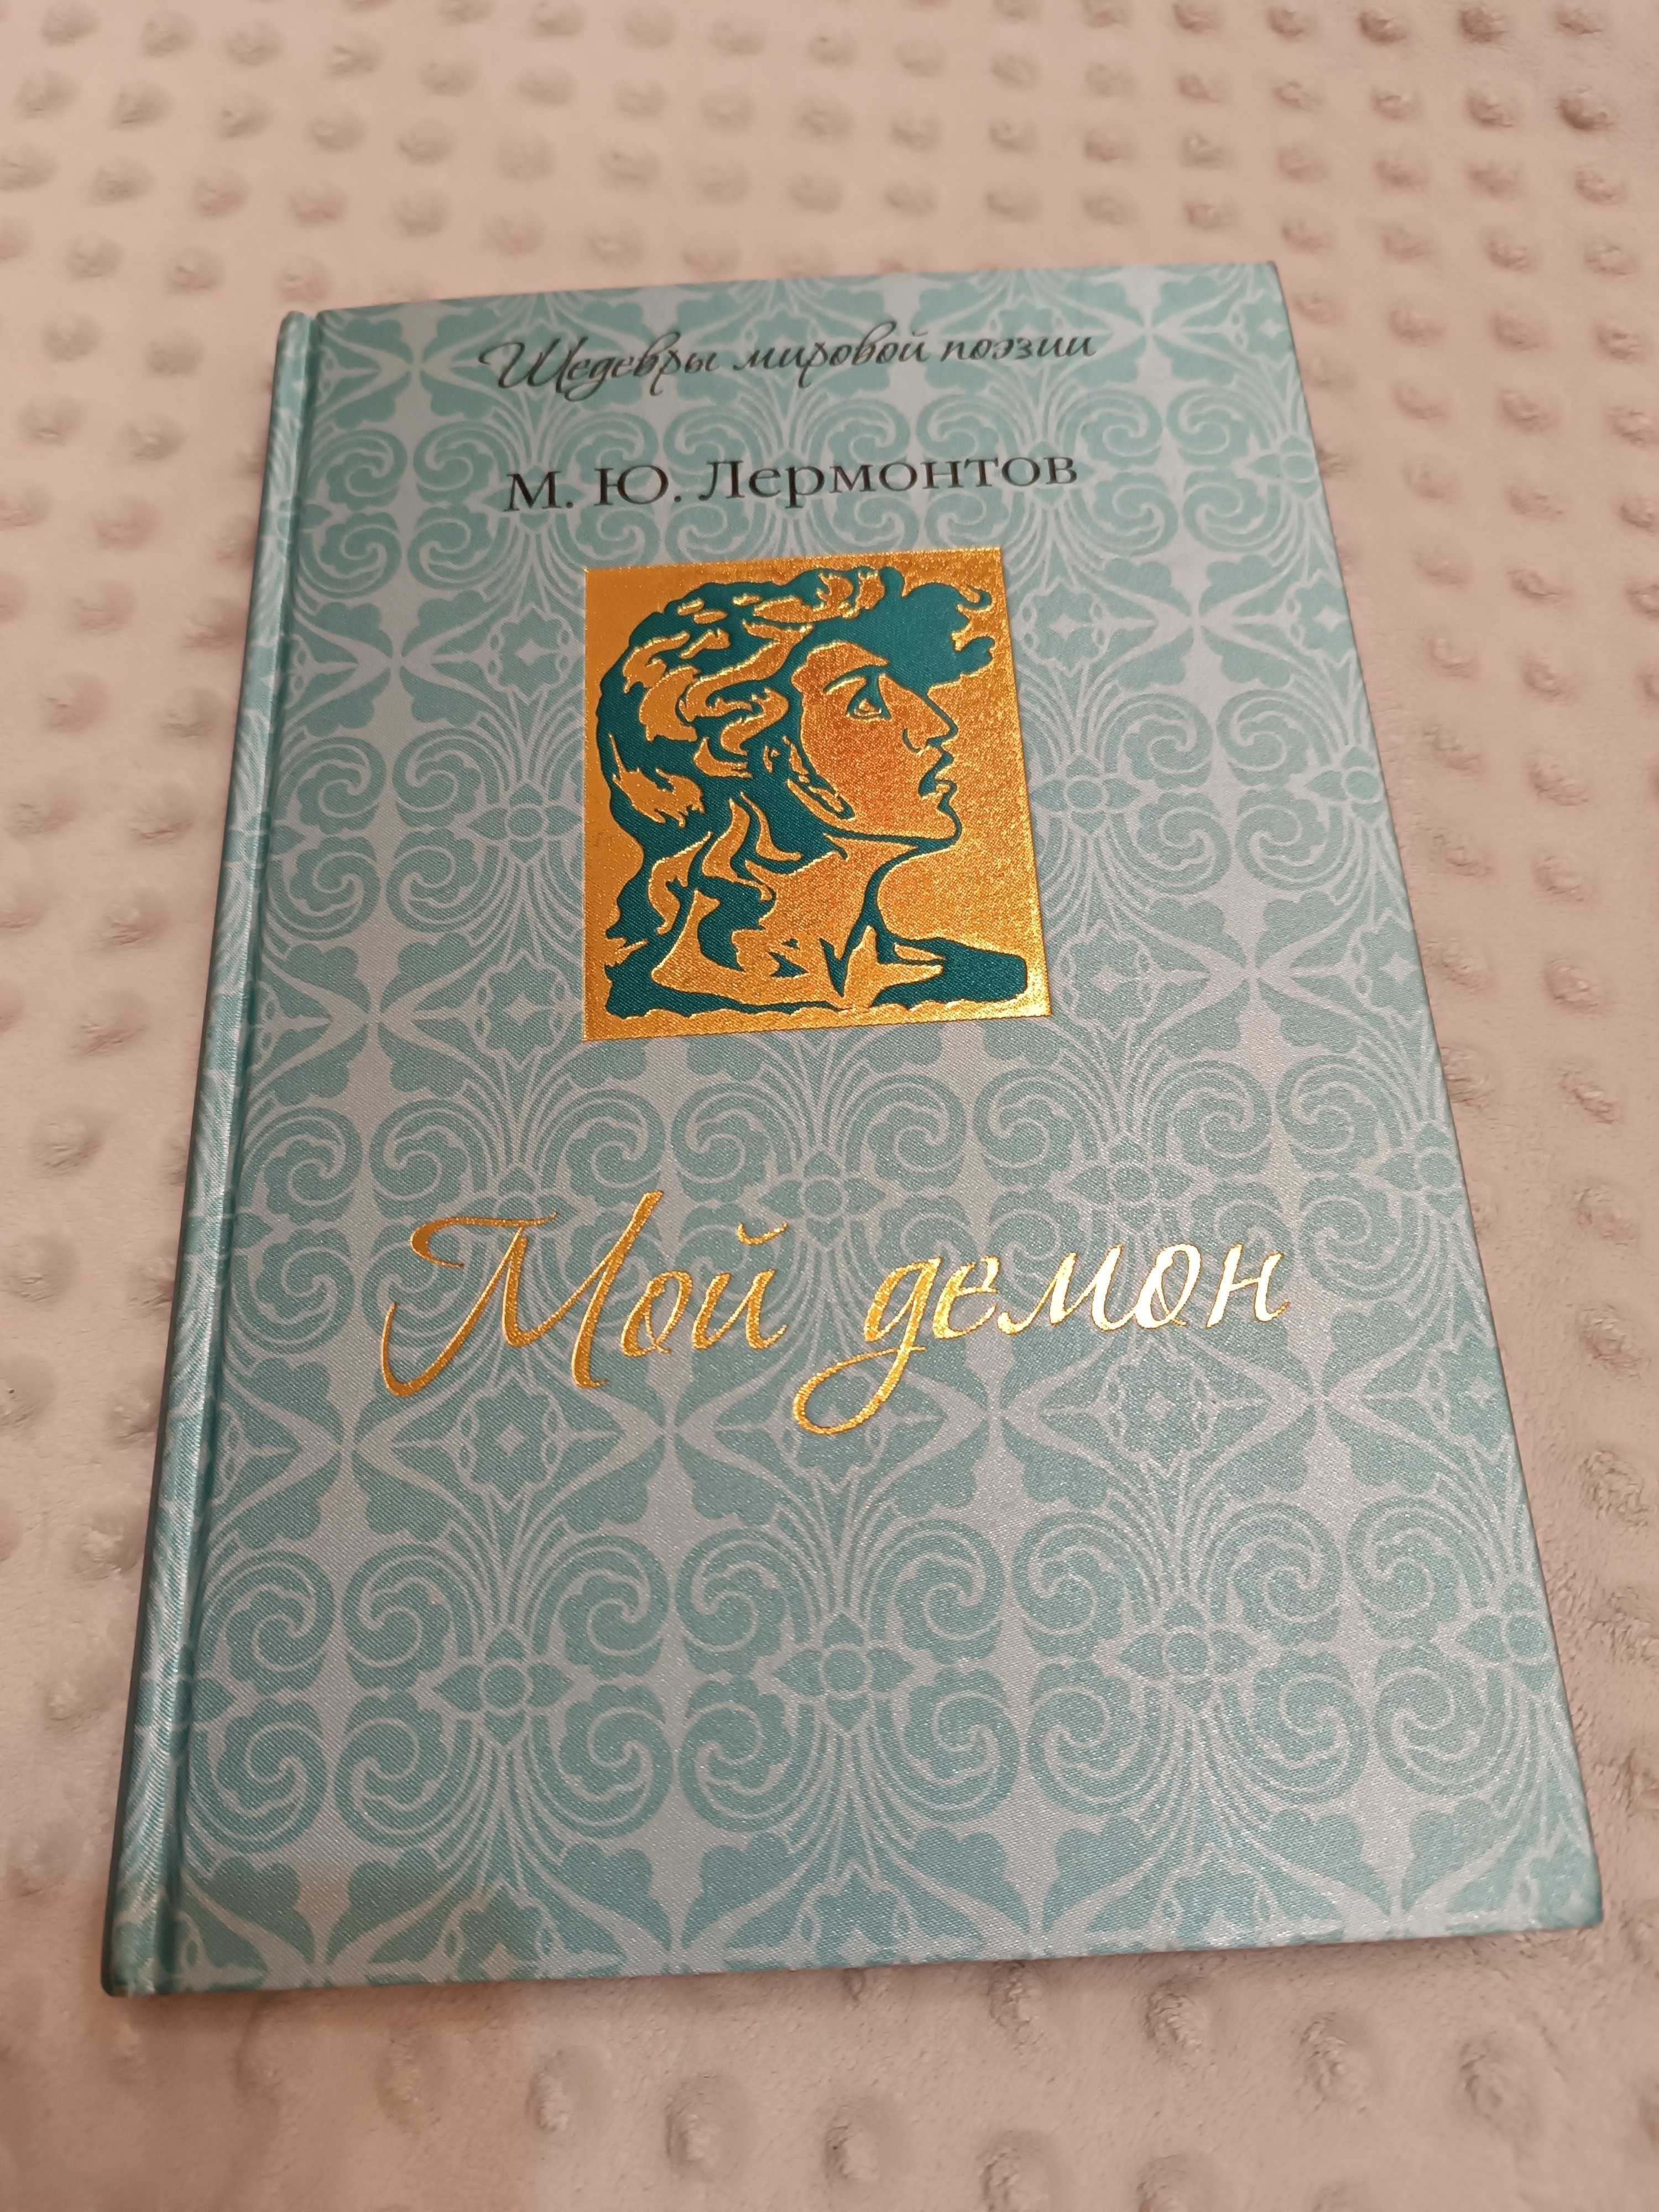 Лермонтов М.Ю. "Мой демон", подарочное издание, красивая новая книга